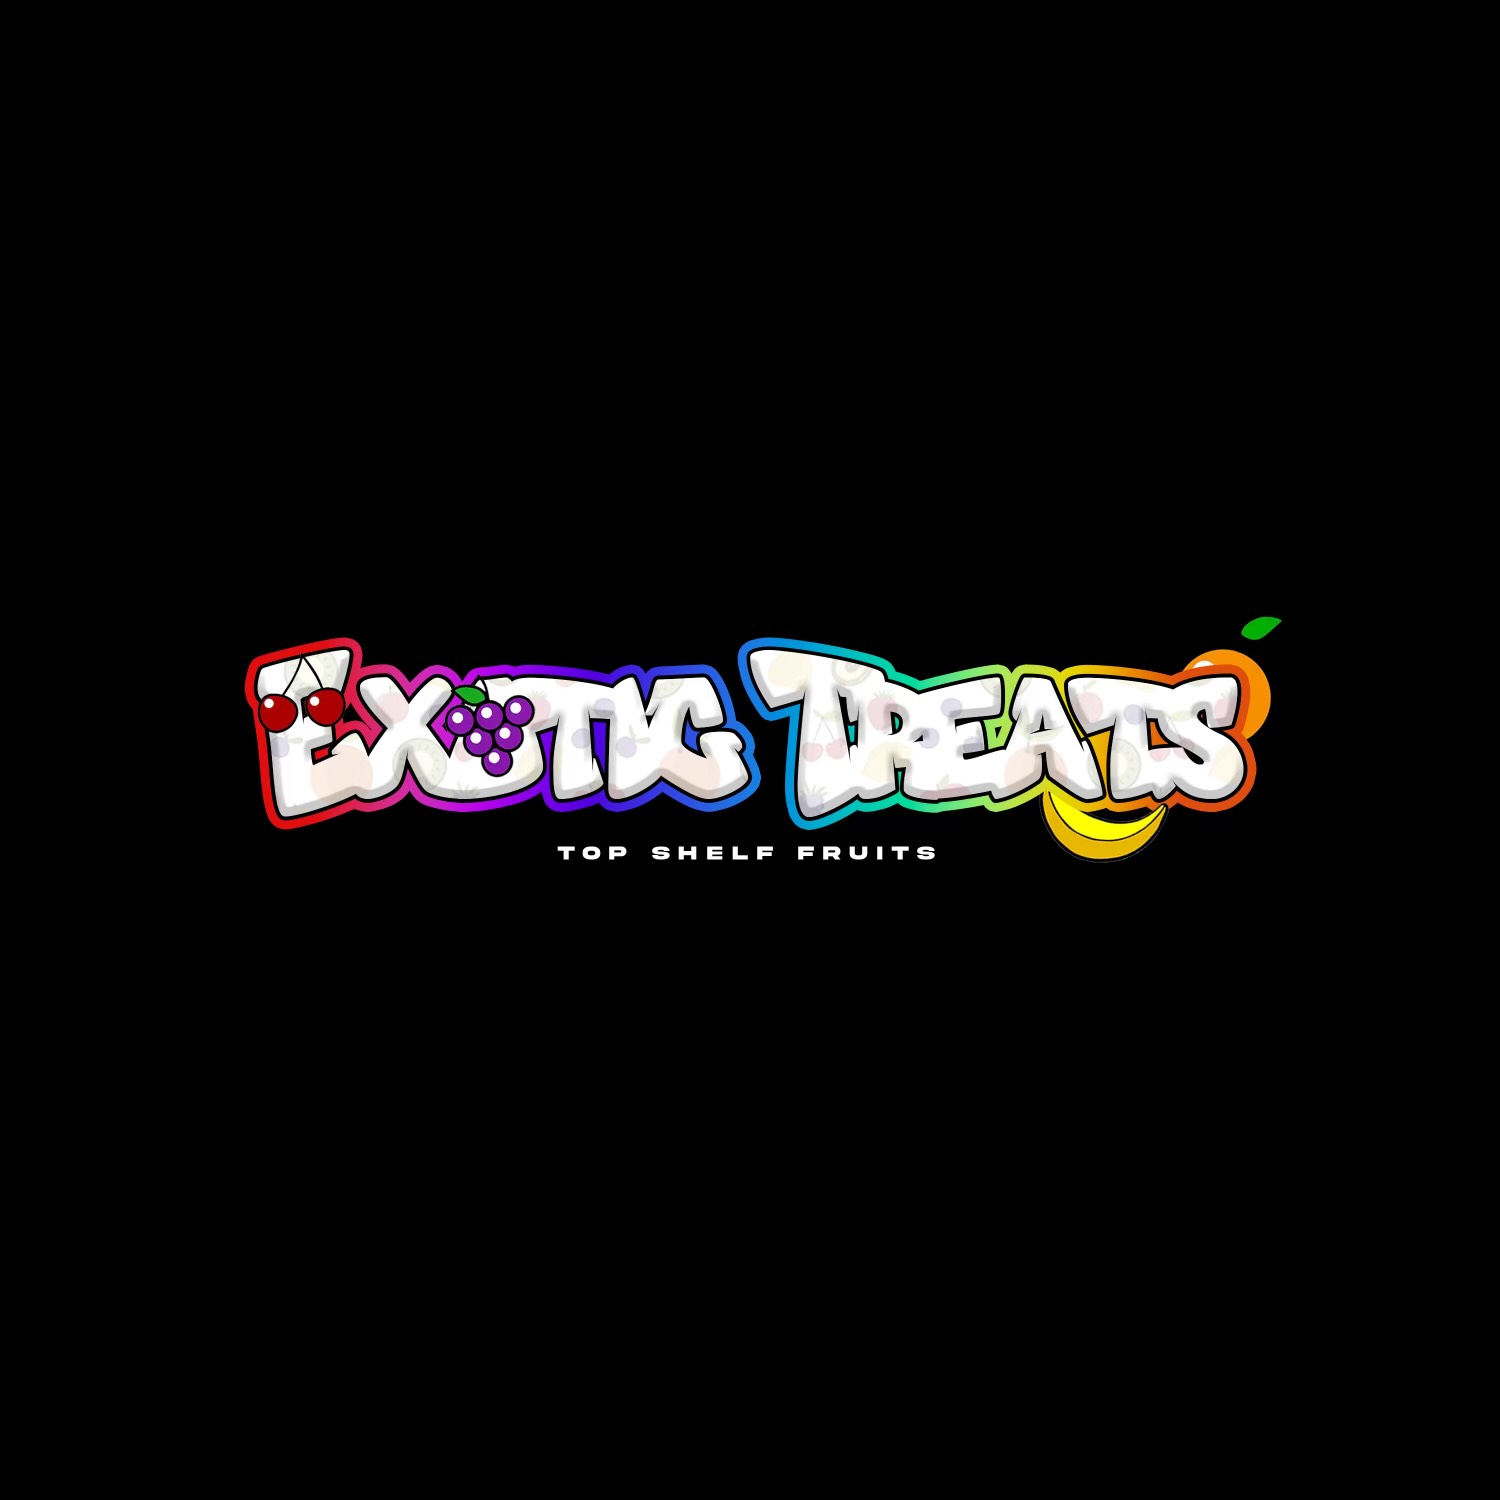 Exotic Treats logo